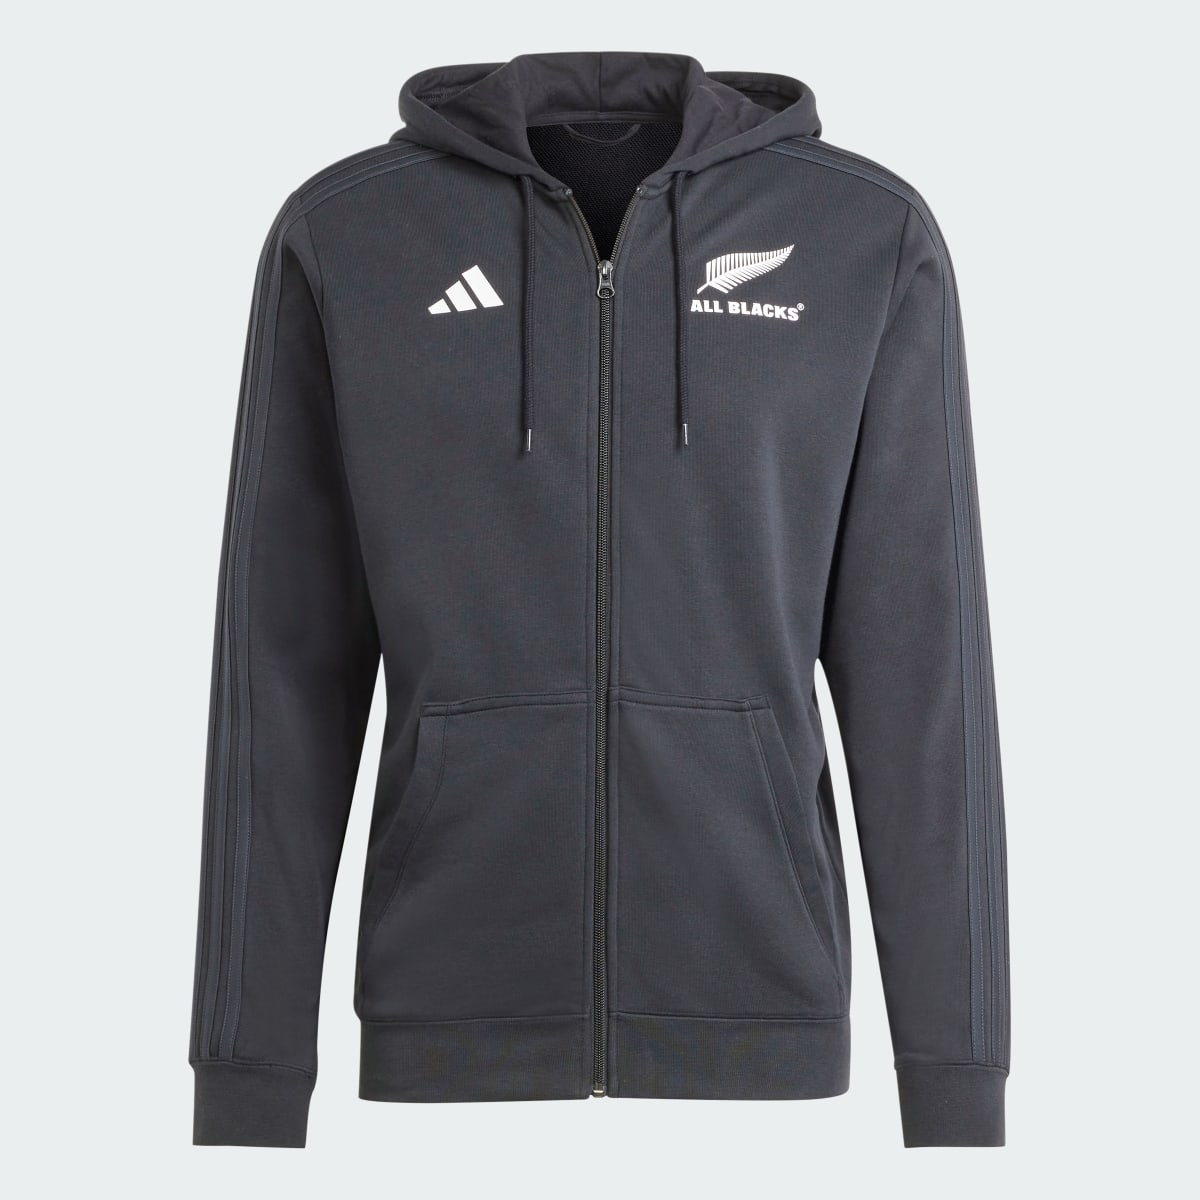 Adidas All Blacks Rugby 3-Stripes Full-Zip Hoodie. 5